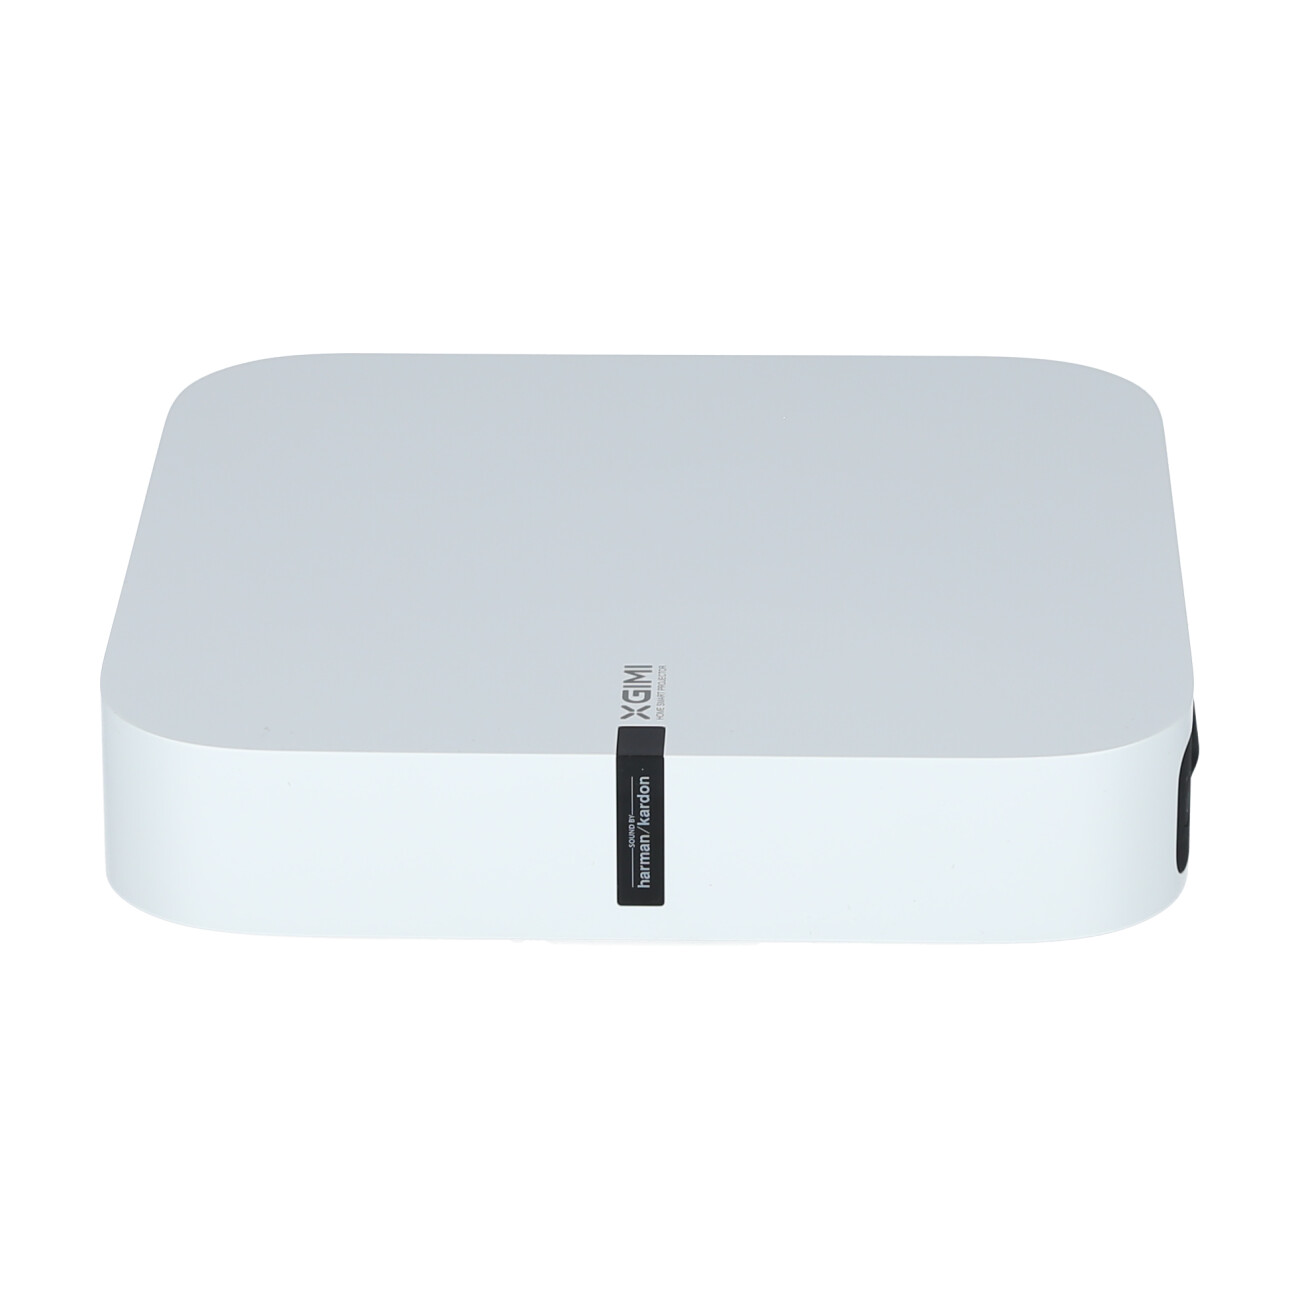 Xgimi ELFIN XL03A Proiettore portatile smart full hd - 1920 x 1080 px - 800  ansi lumens - dlp - bianco